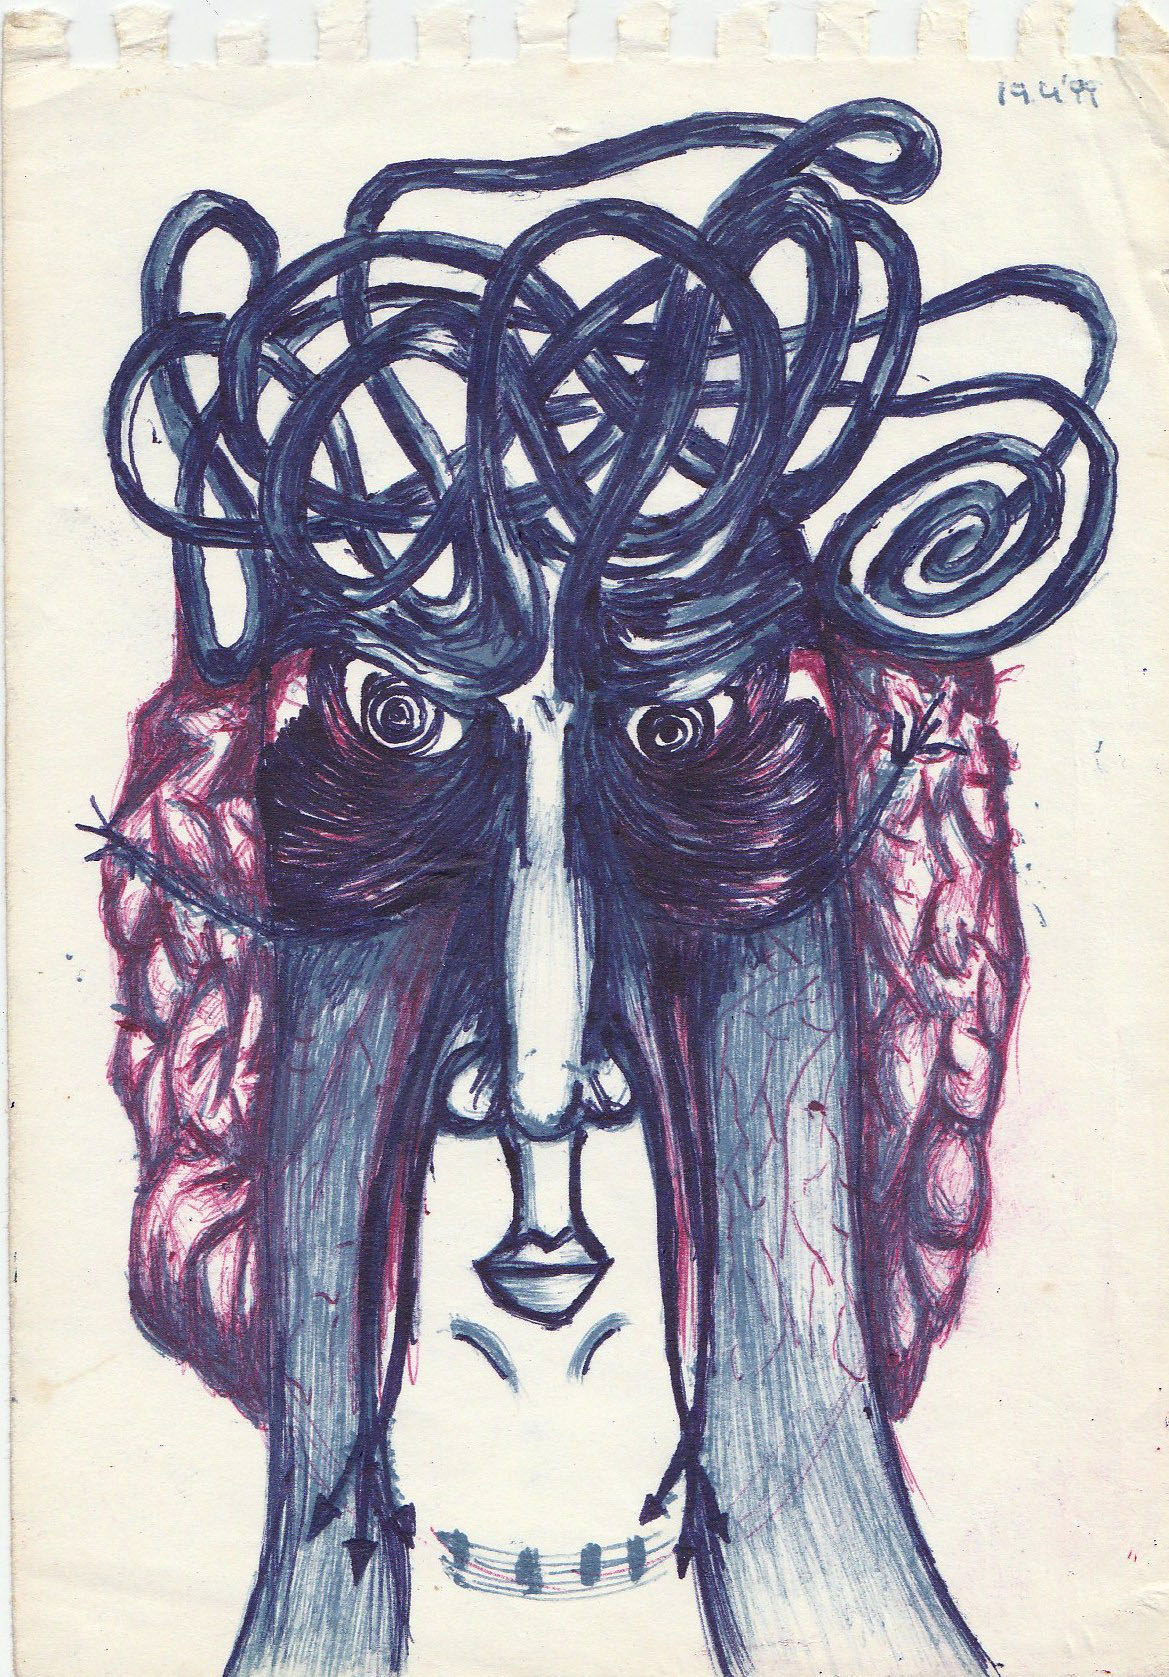 Drawing by Goran Stojčetović (1999), with permission